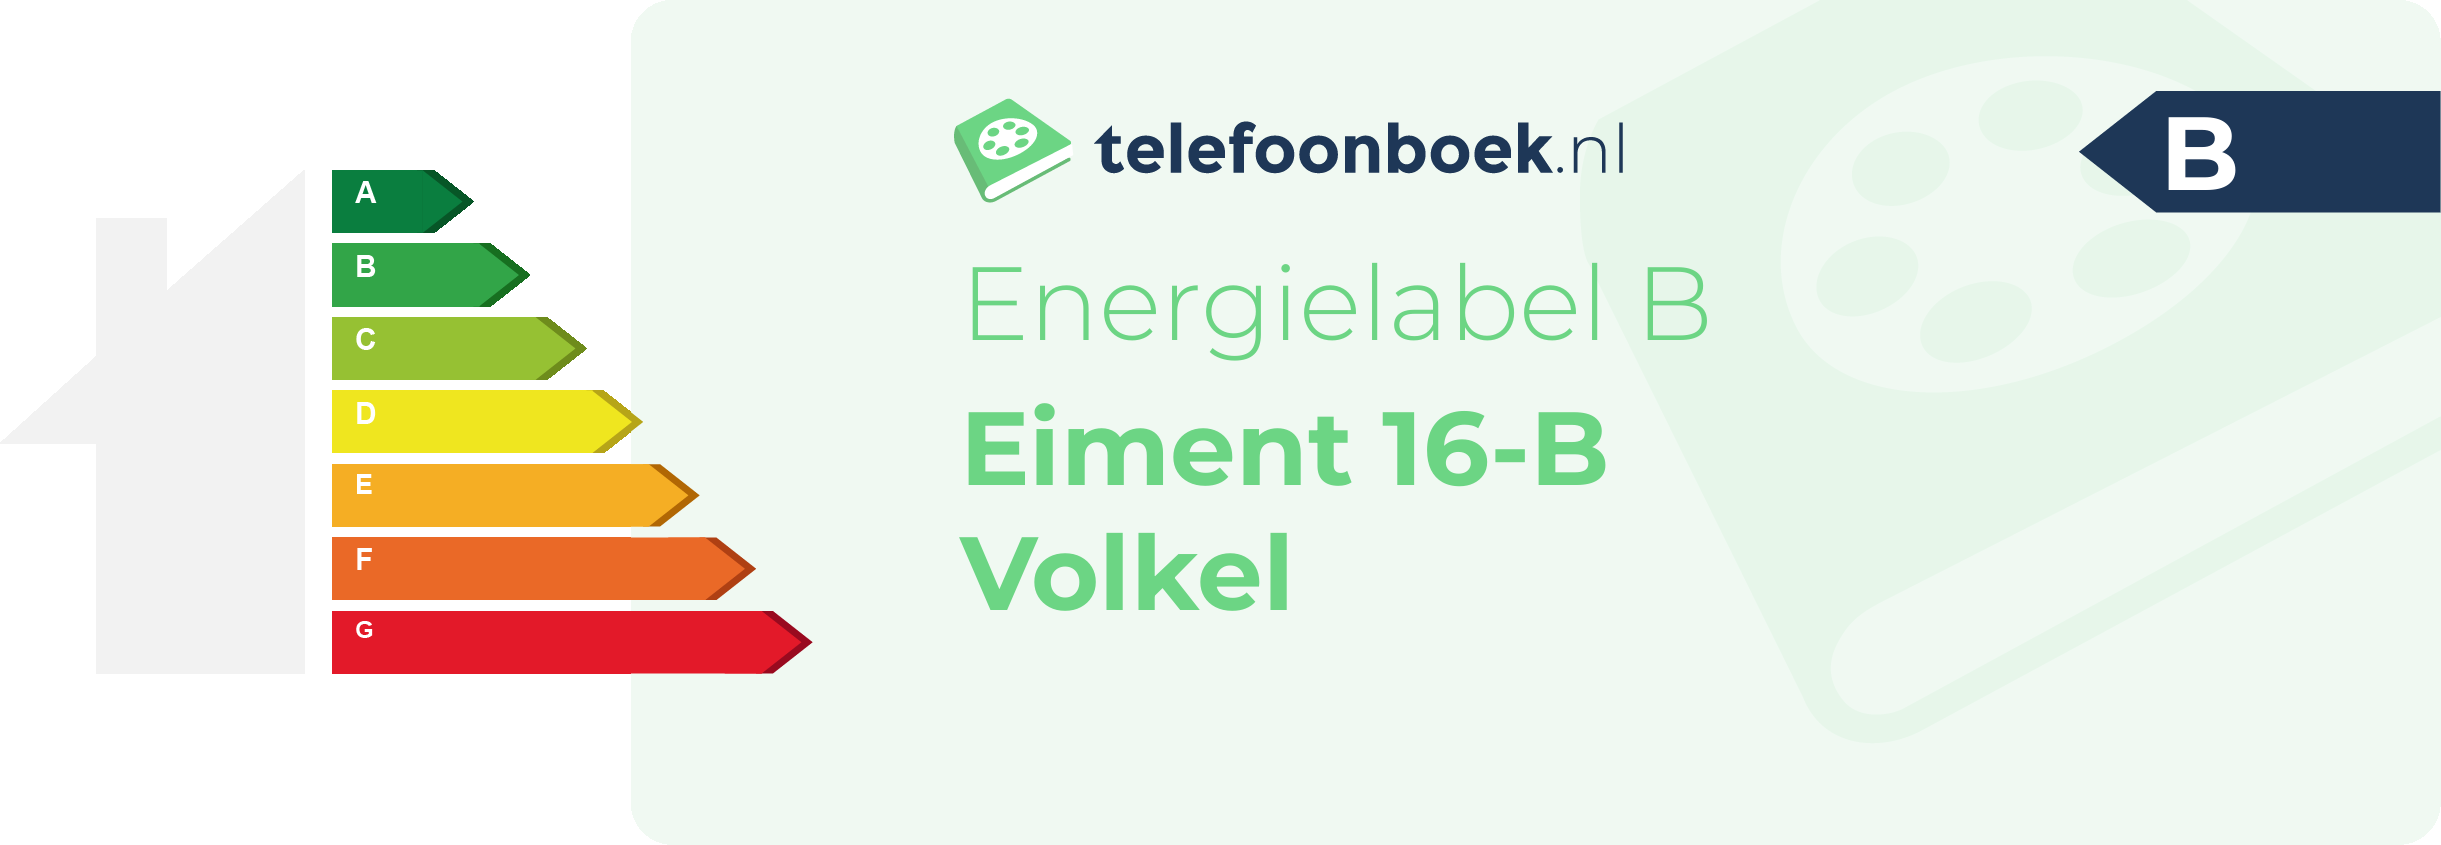 Energielabel Eiment 16-B Volkel